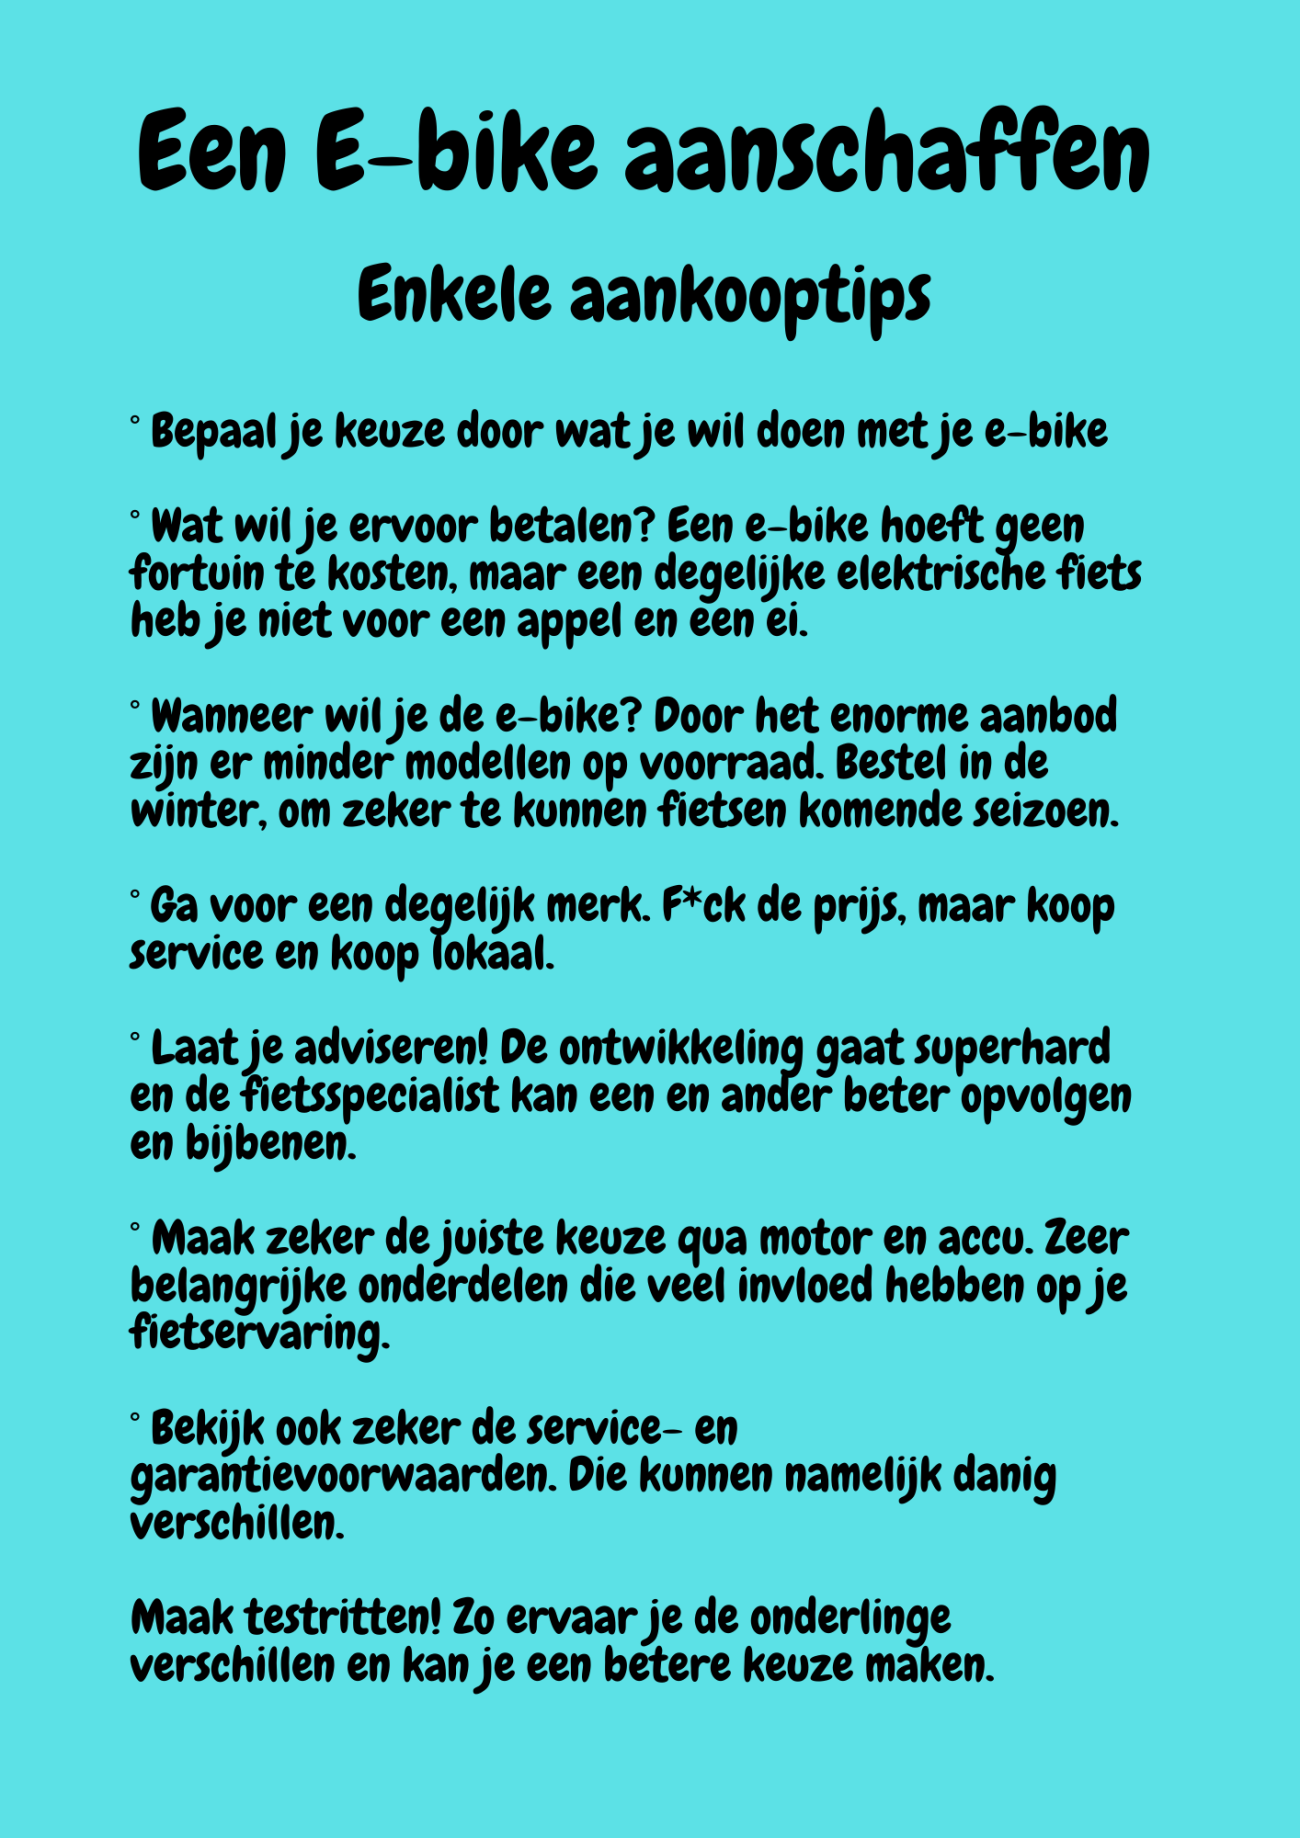 /image/data/homepage/Een E-bike aanschaffen (1).png